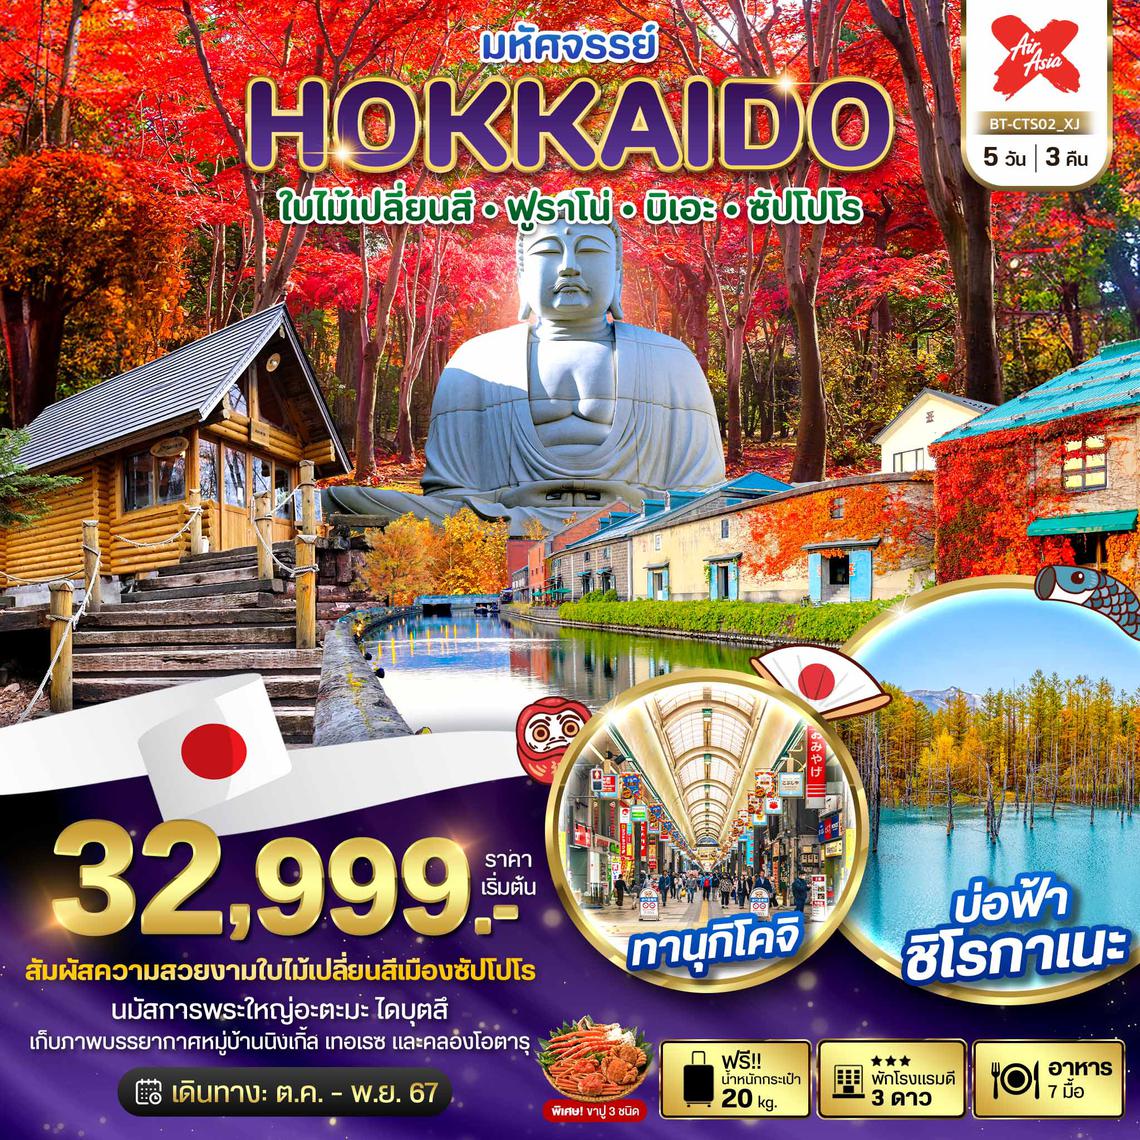 ทัวร์ญี่ปุ่น HOKKAIDO ใบไม้เปลี่ยนสี ฟูราโน่ บิเอะ ซัปโปโร 5 วัน 3 คืน